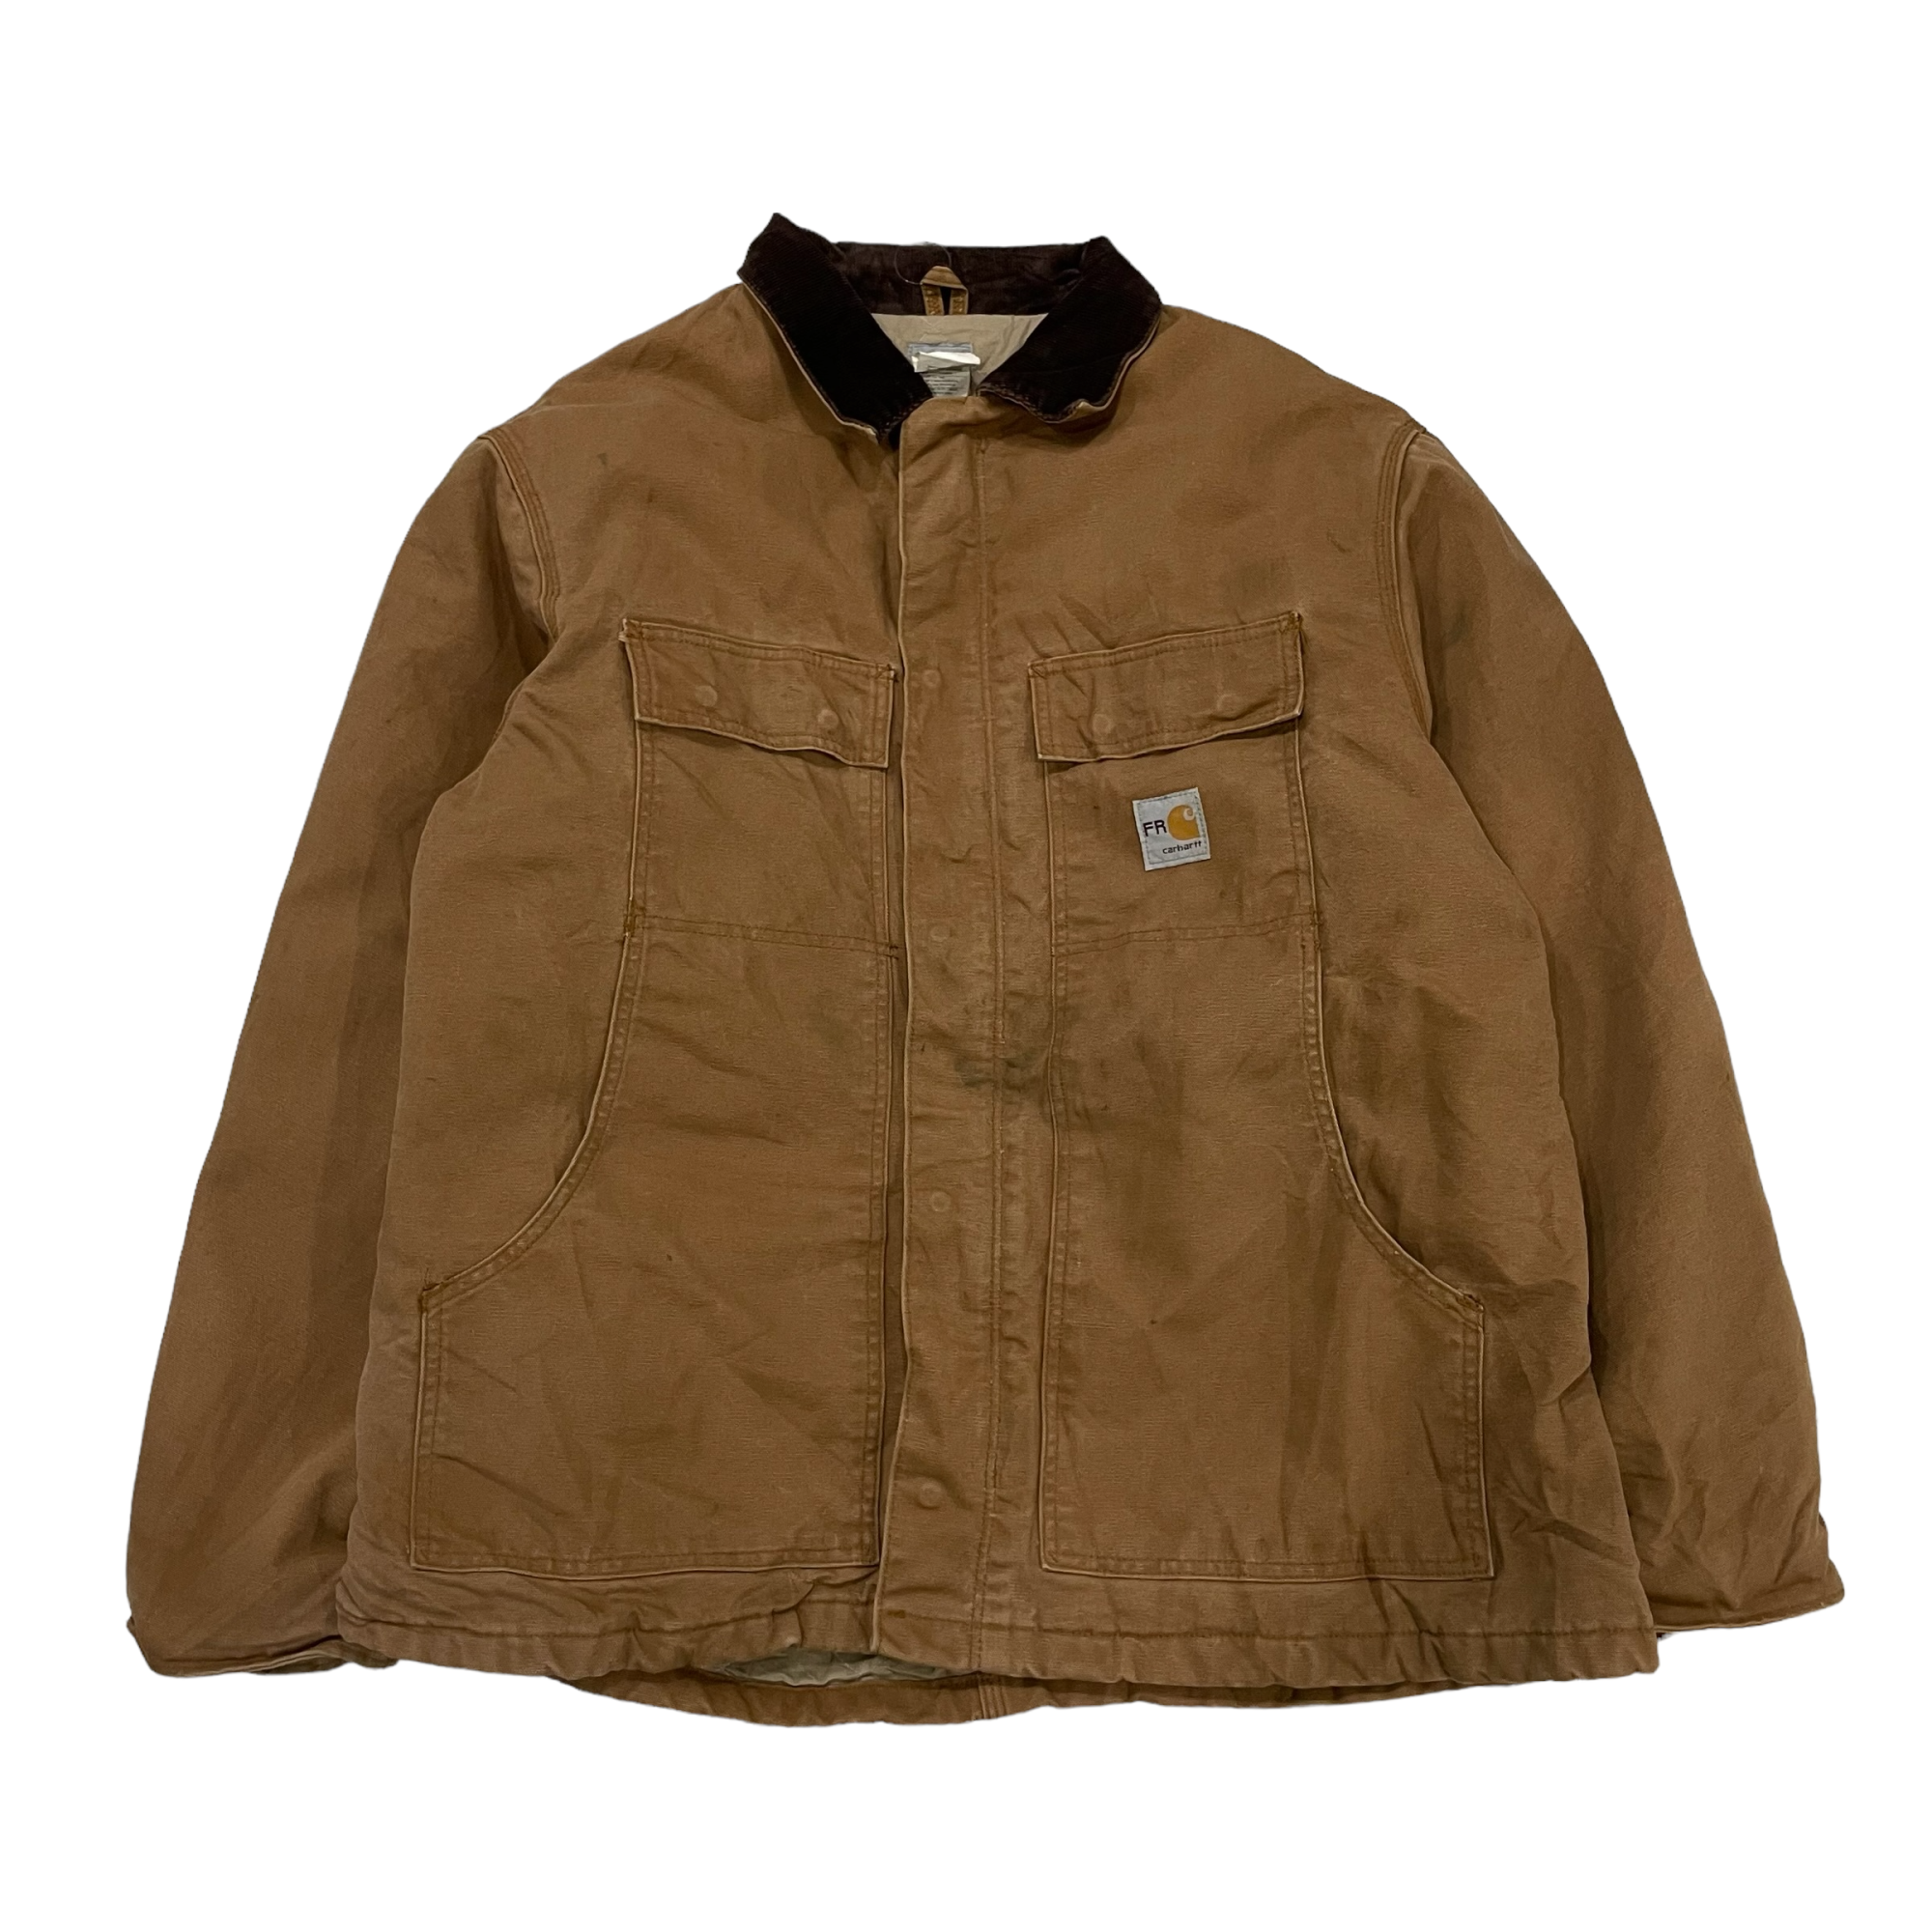 Carhartt / "Dearborn" duck jacket #A260